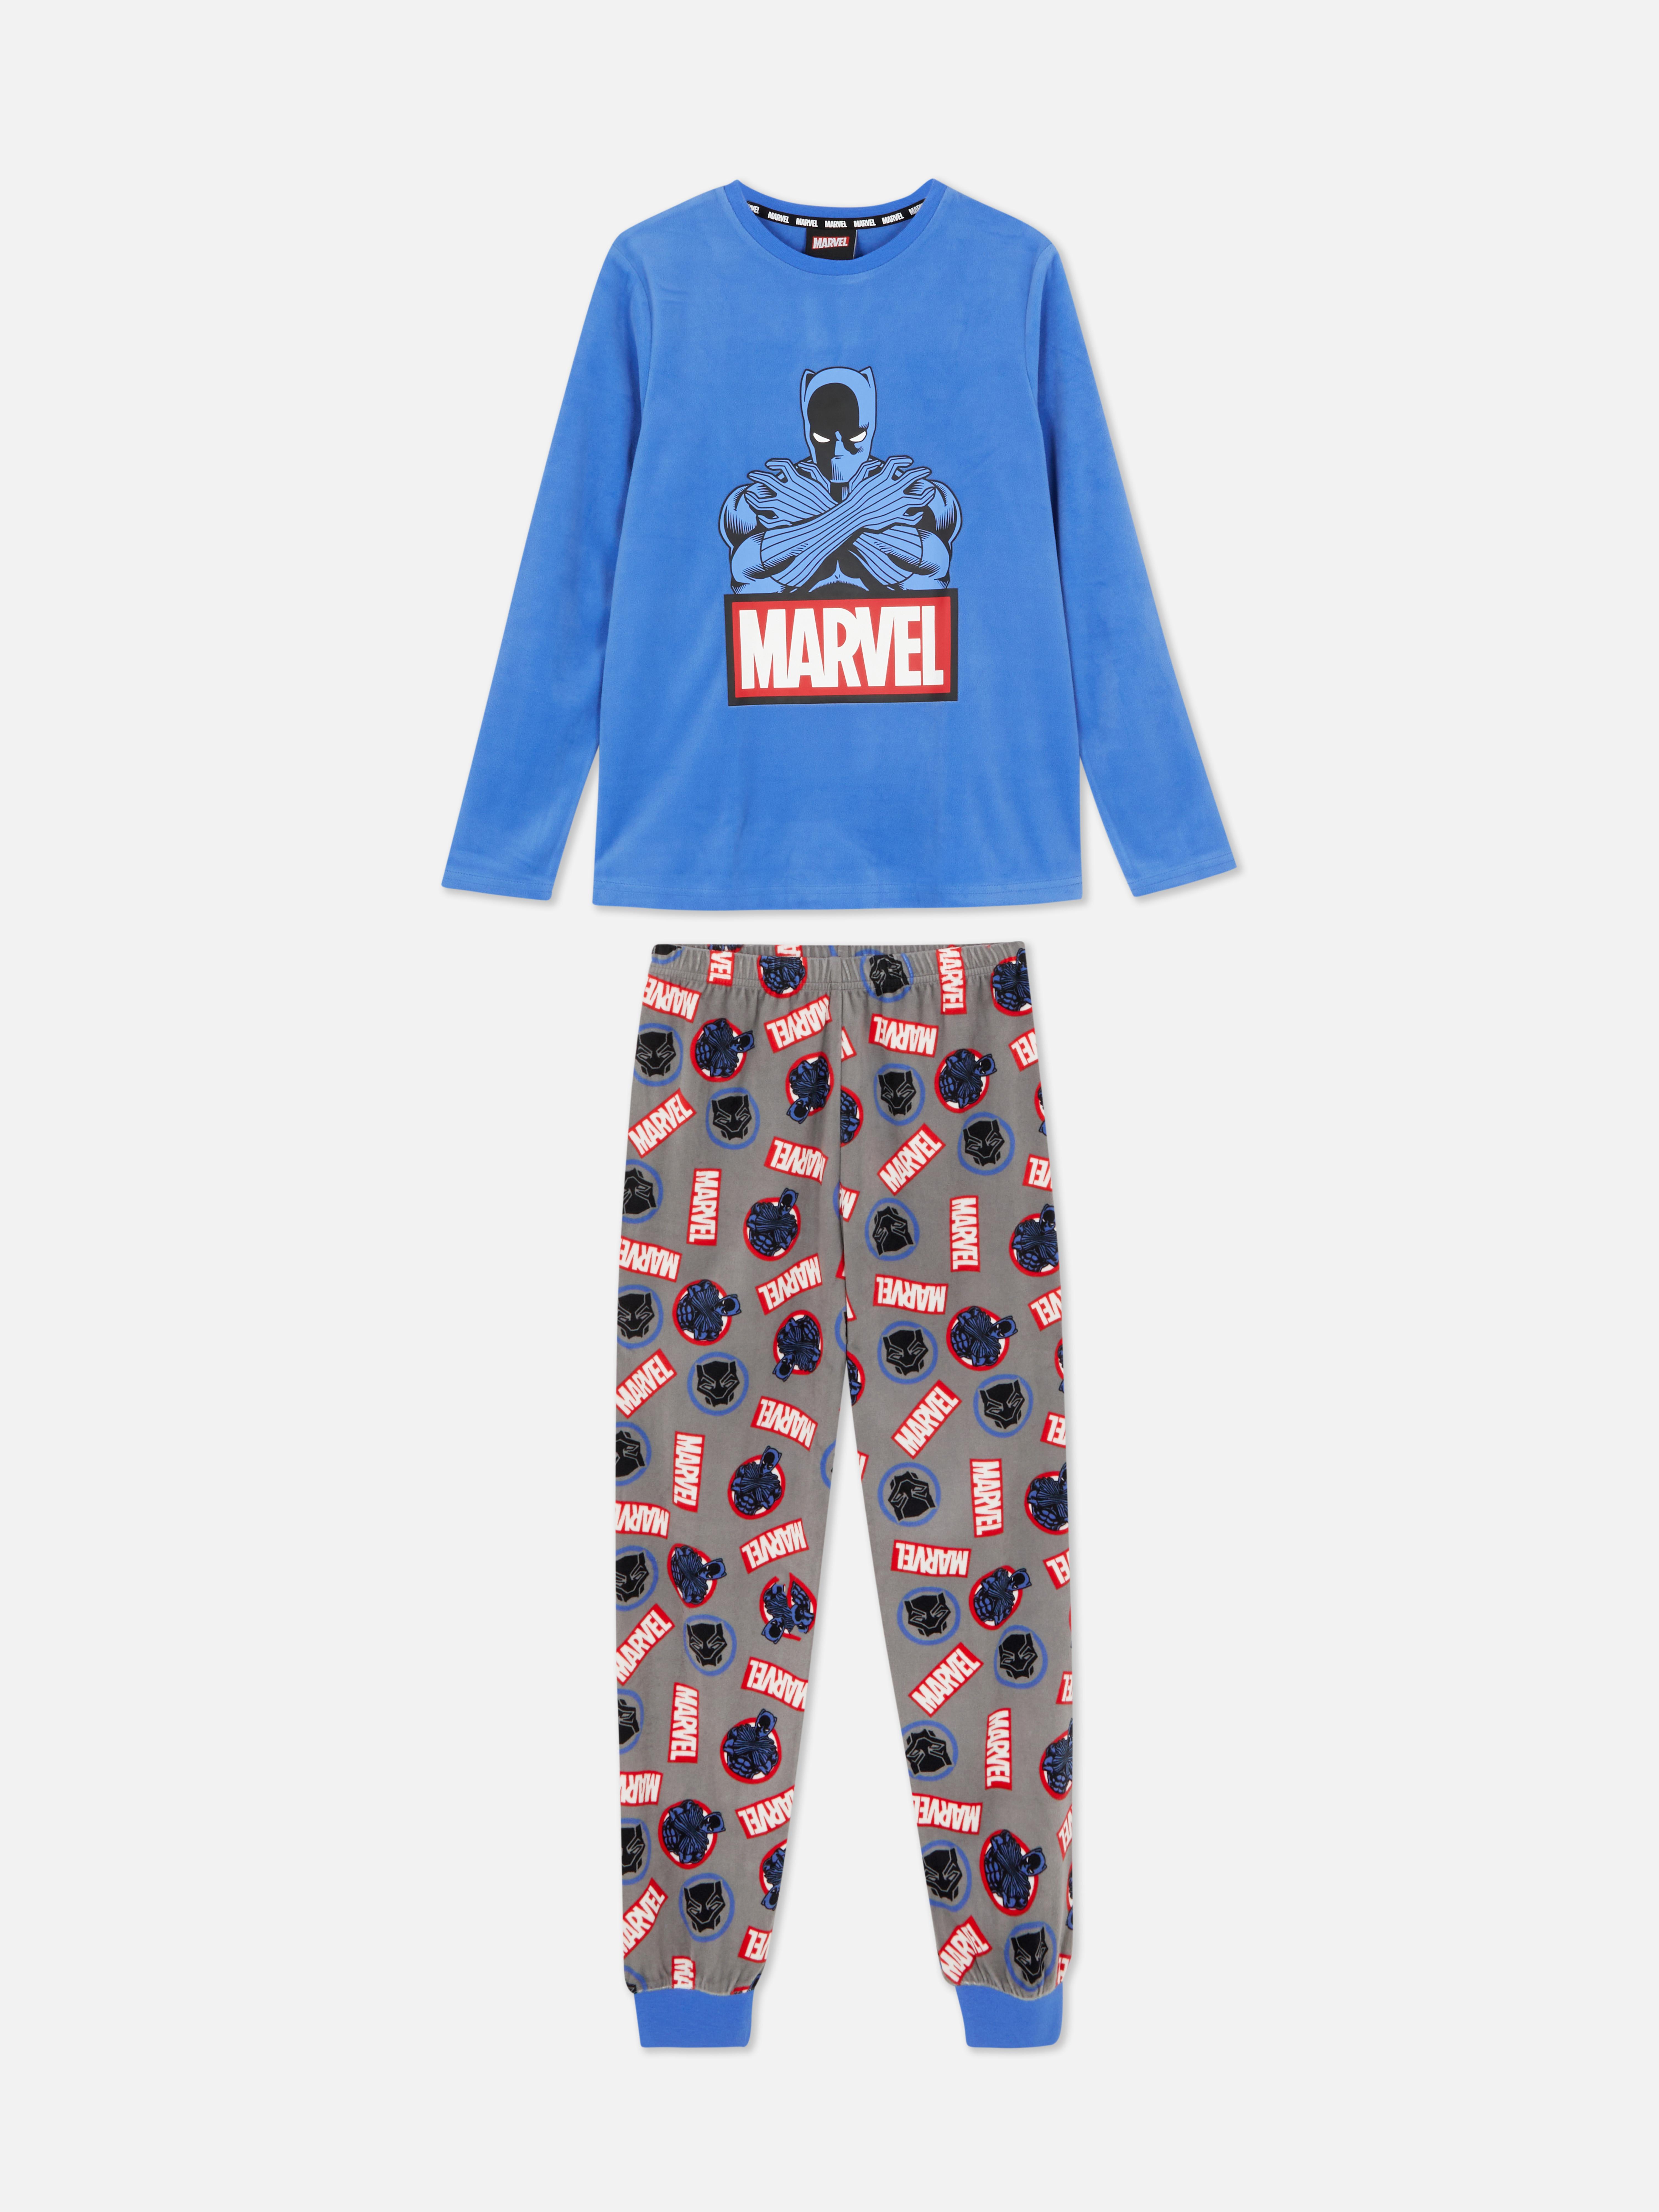 Marvel Black Panther Pyjamas